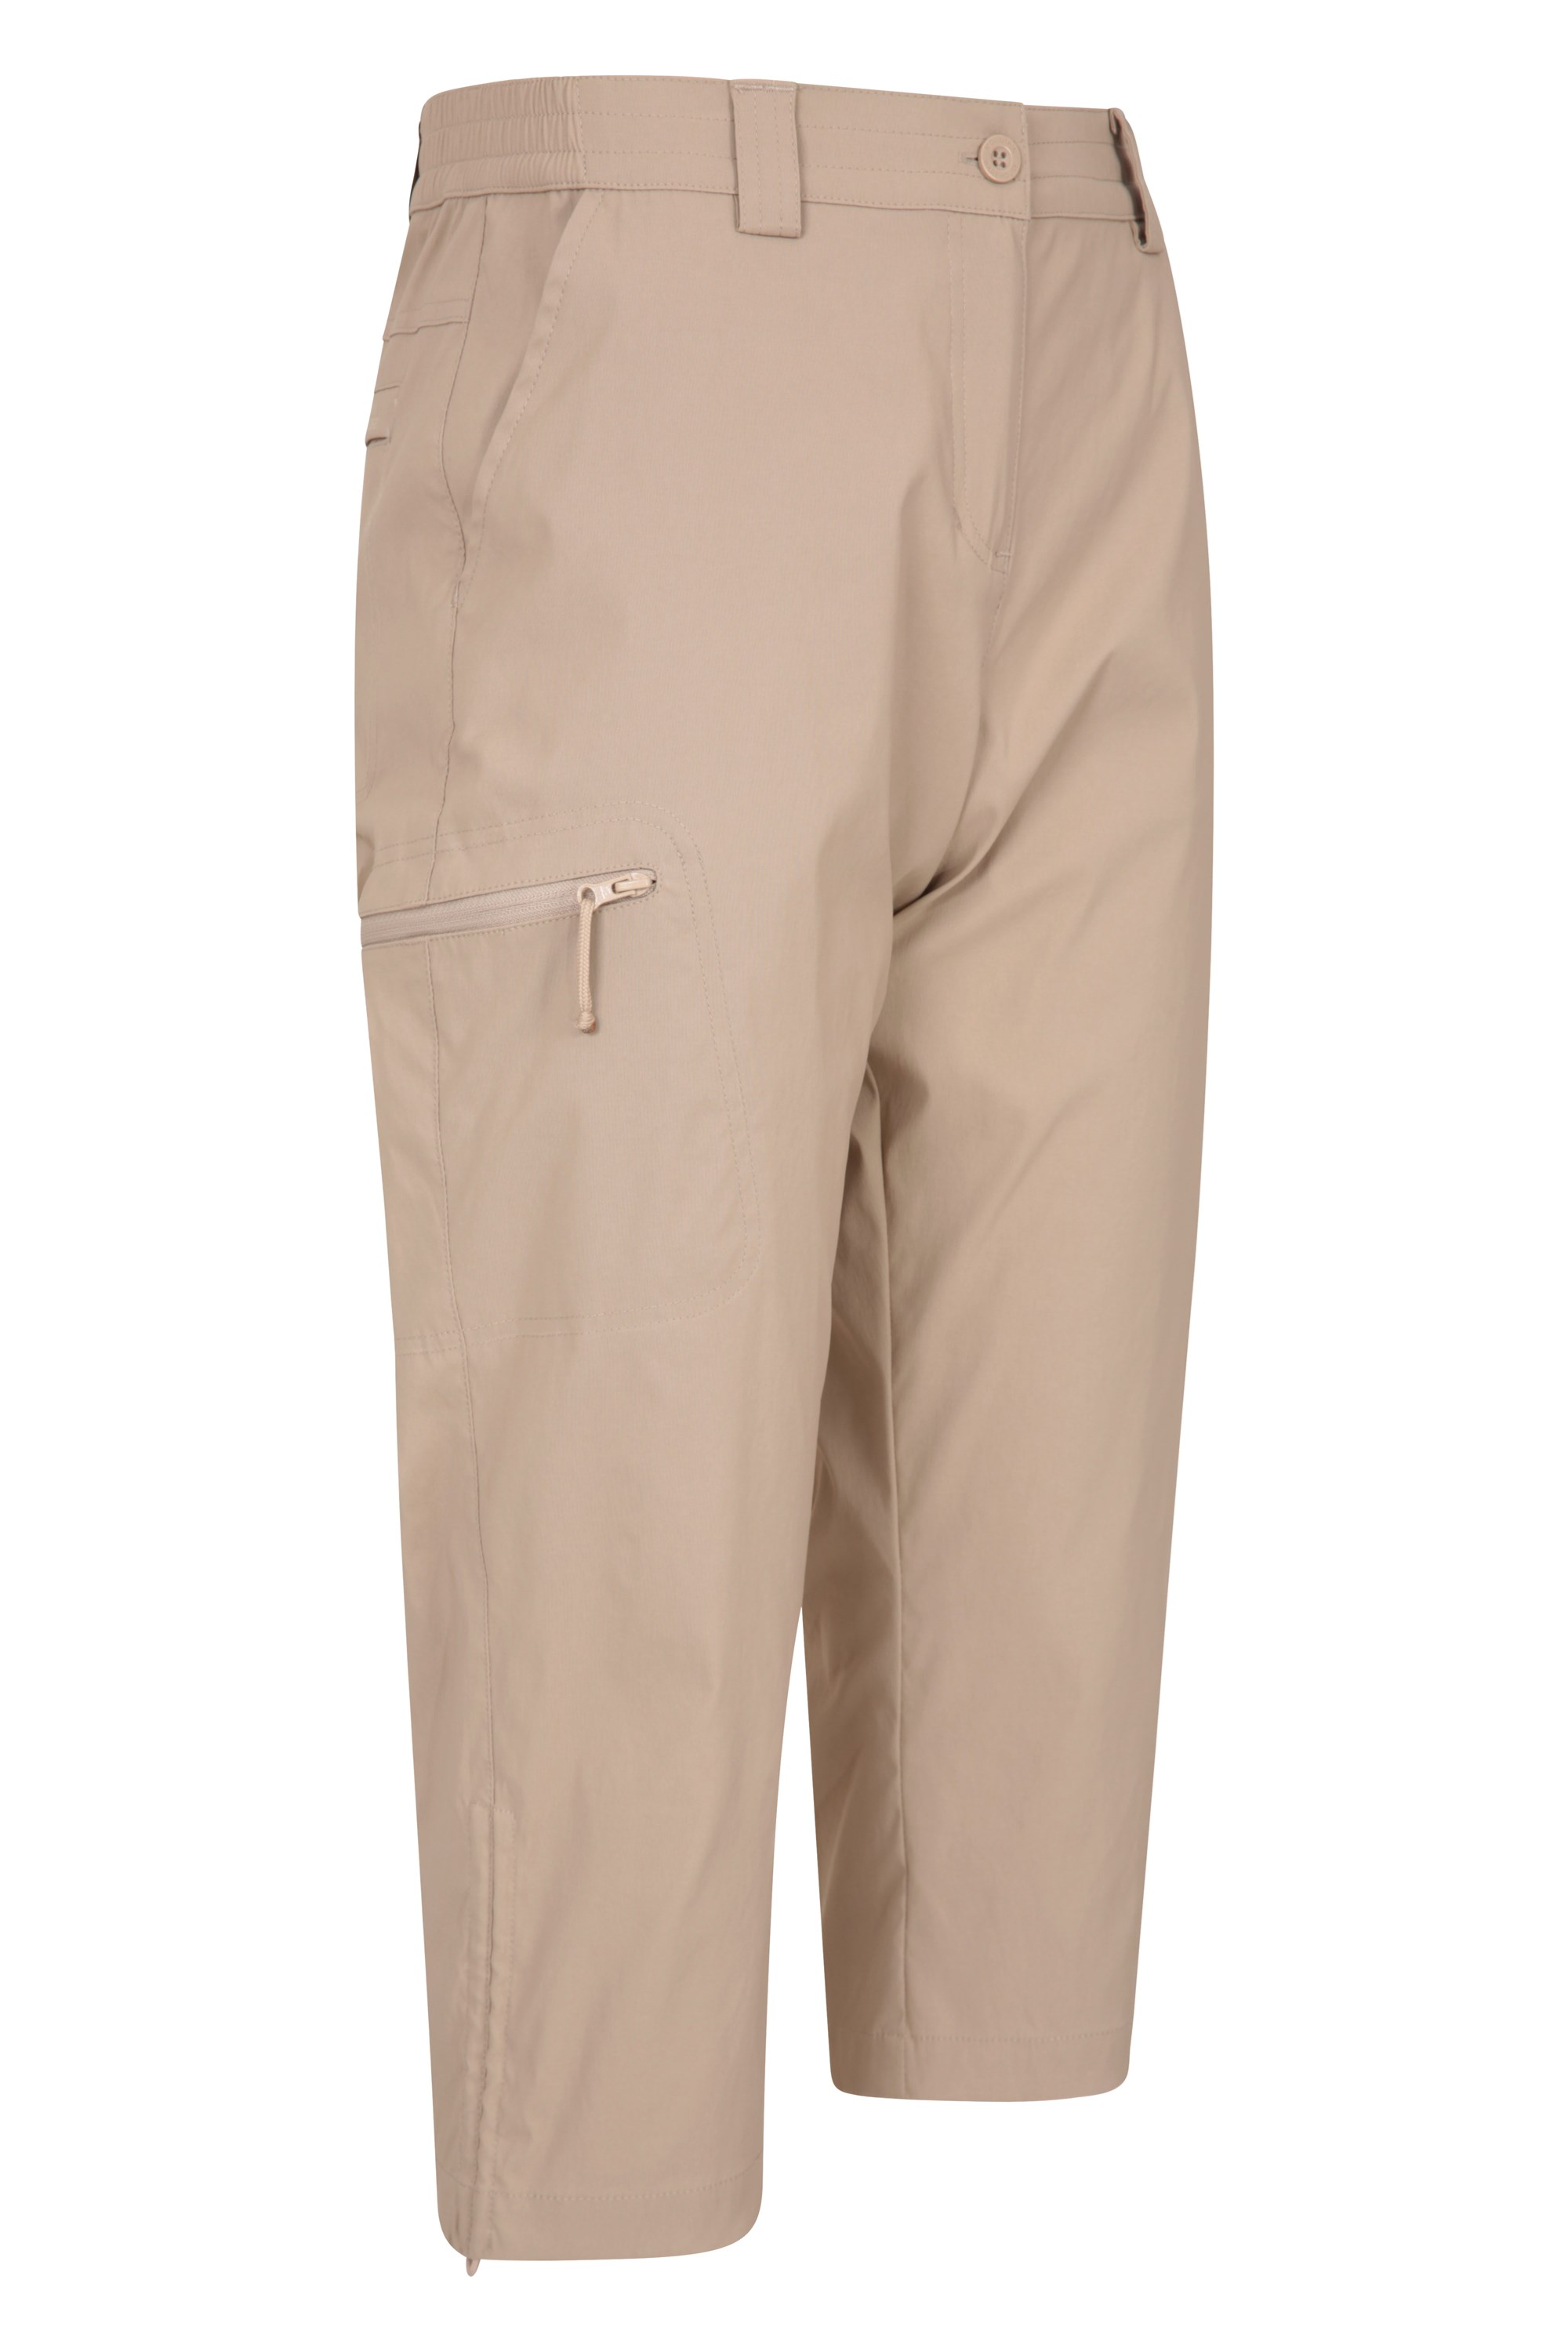 Mountain Warehouse Hiker Damen-Stretch-Caprihose – UV-Schutzhose mehrere Taschen – ideal für draußen auf Reisen beim Camping schnell trocknend dehnbar beim Wandern